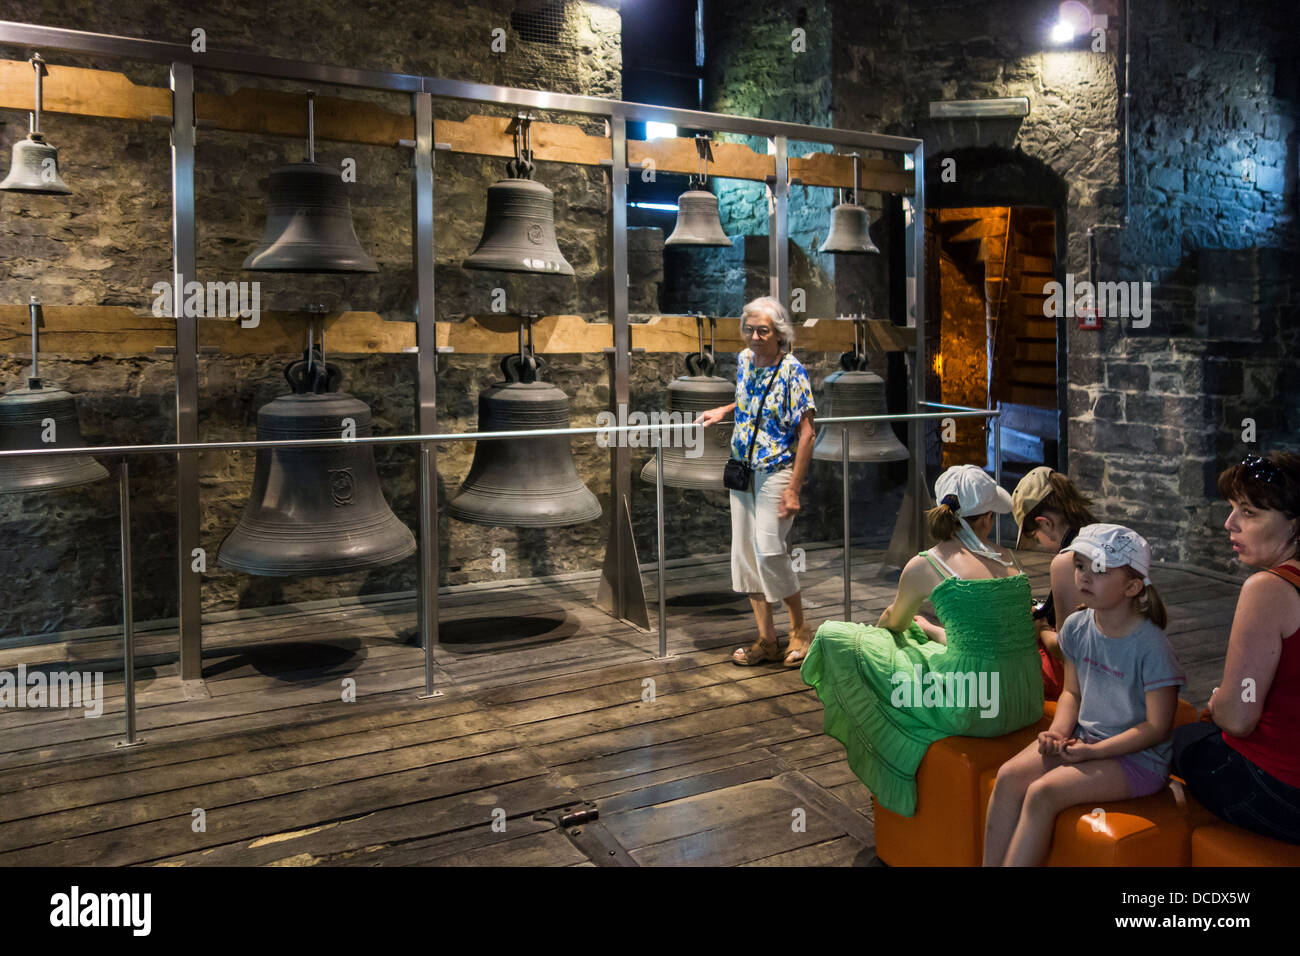 Los turistas que visitan viejas campanas de carillón en exhibición en el museo en el campanario en el centro histórico de Gante, Flandes Oriental, Bélgica Foto de stock